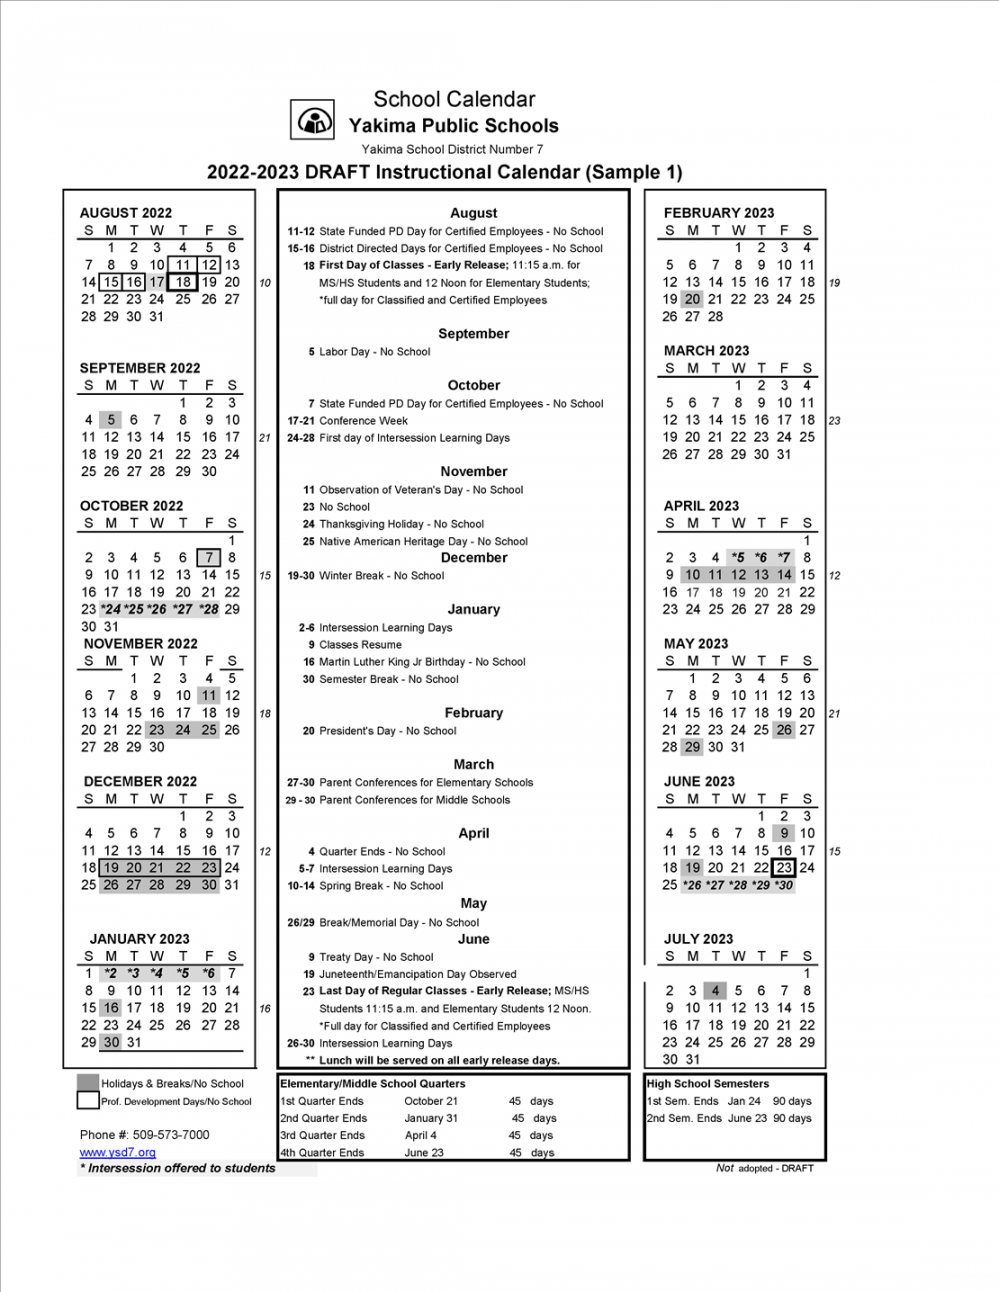 Surveys / Modified Calendar